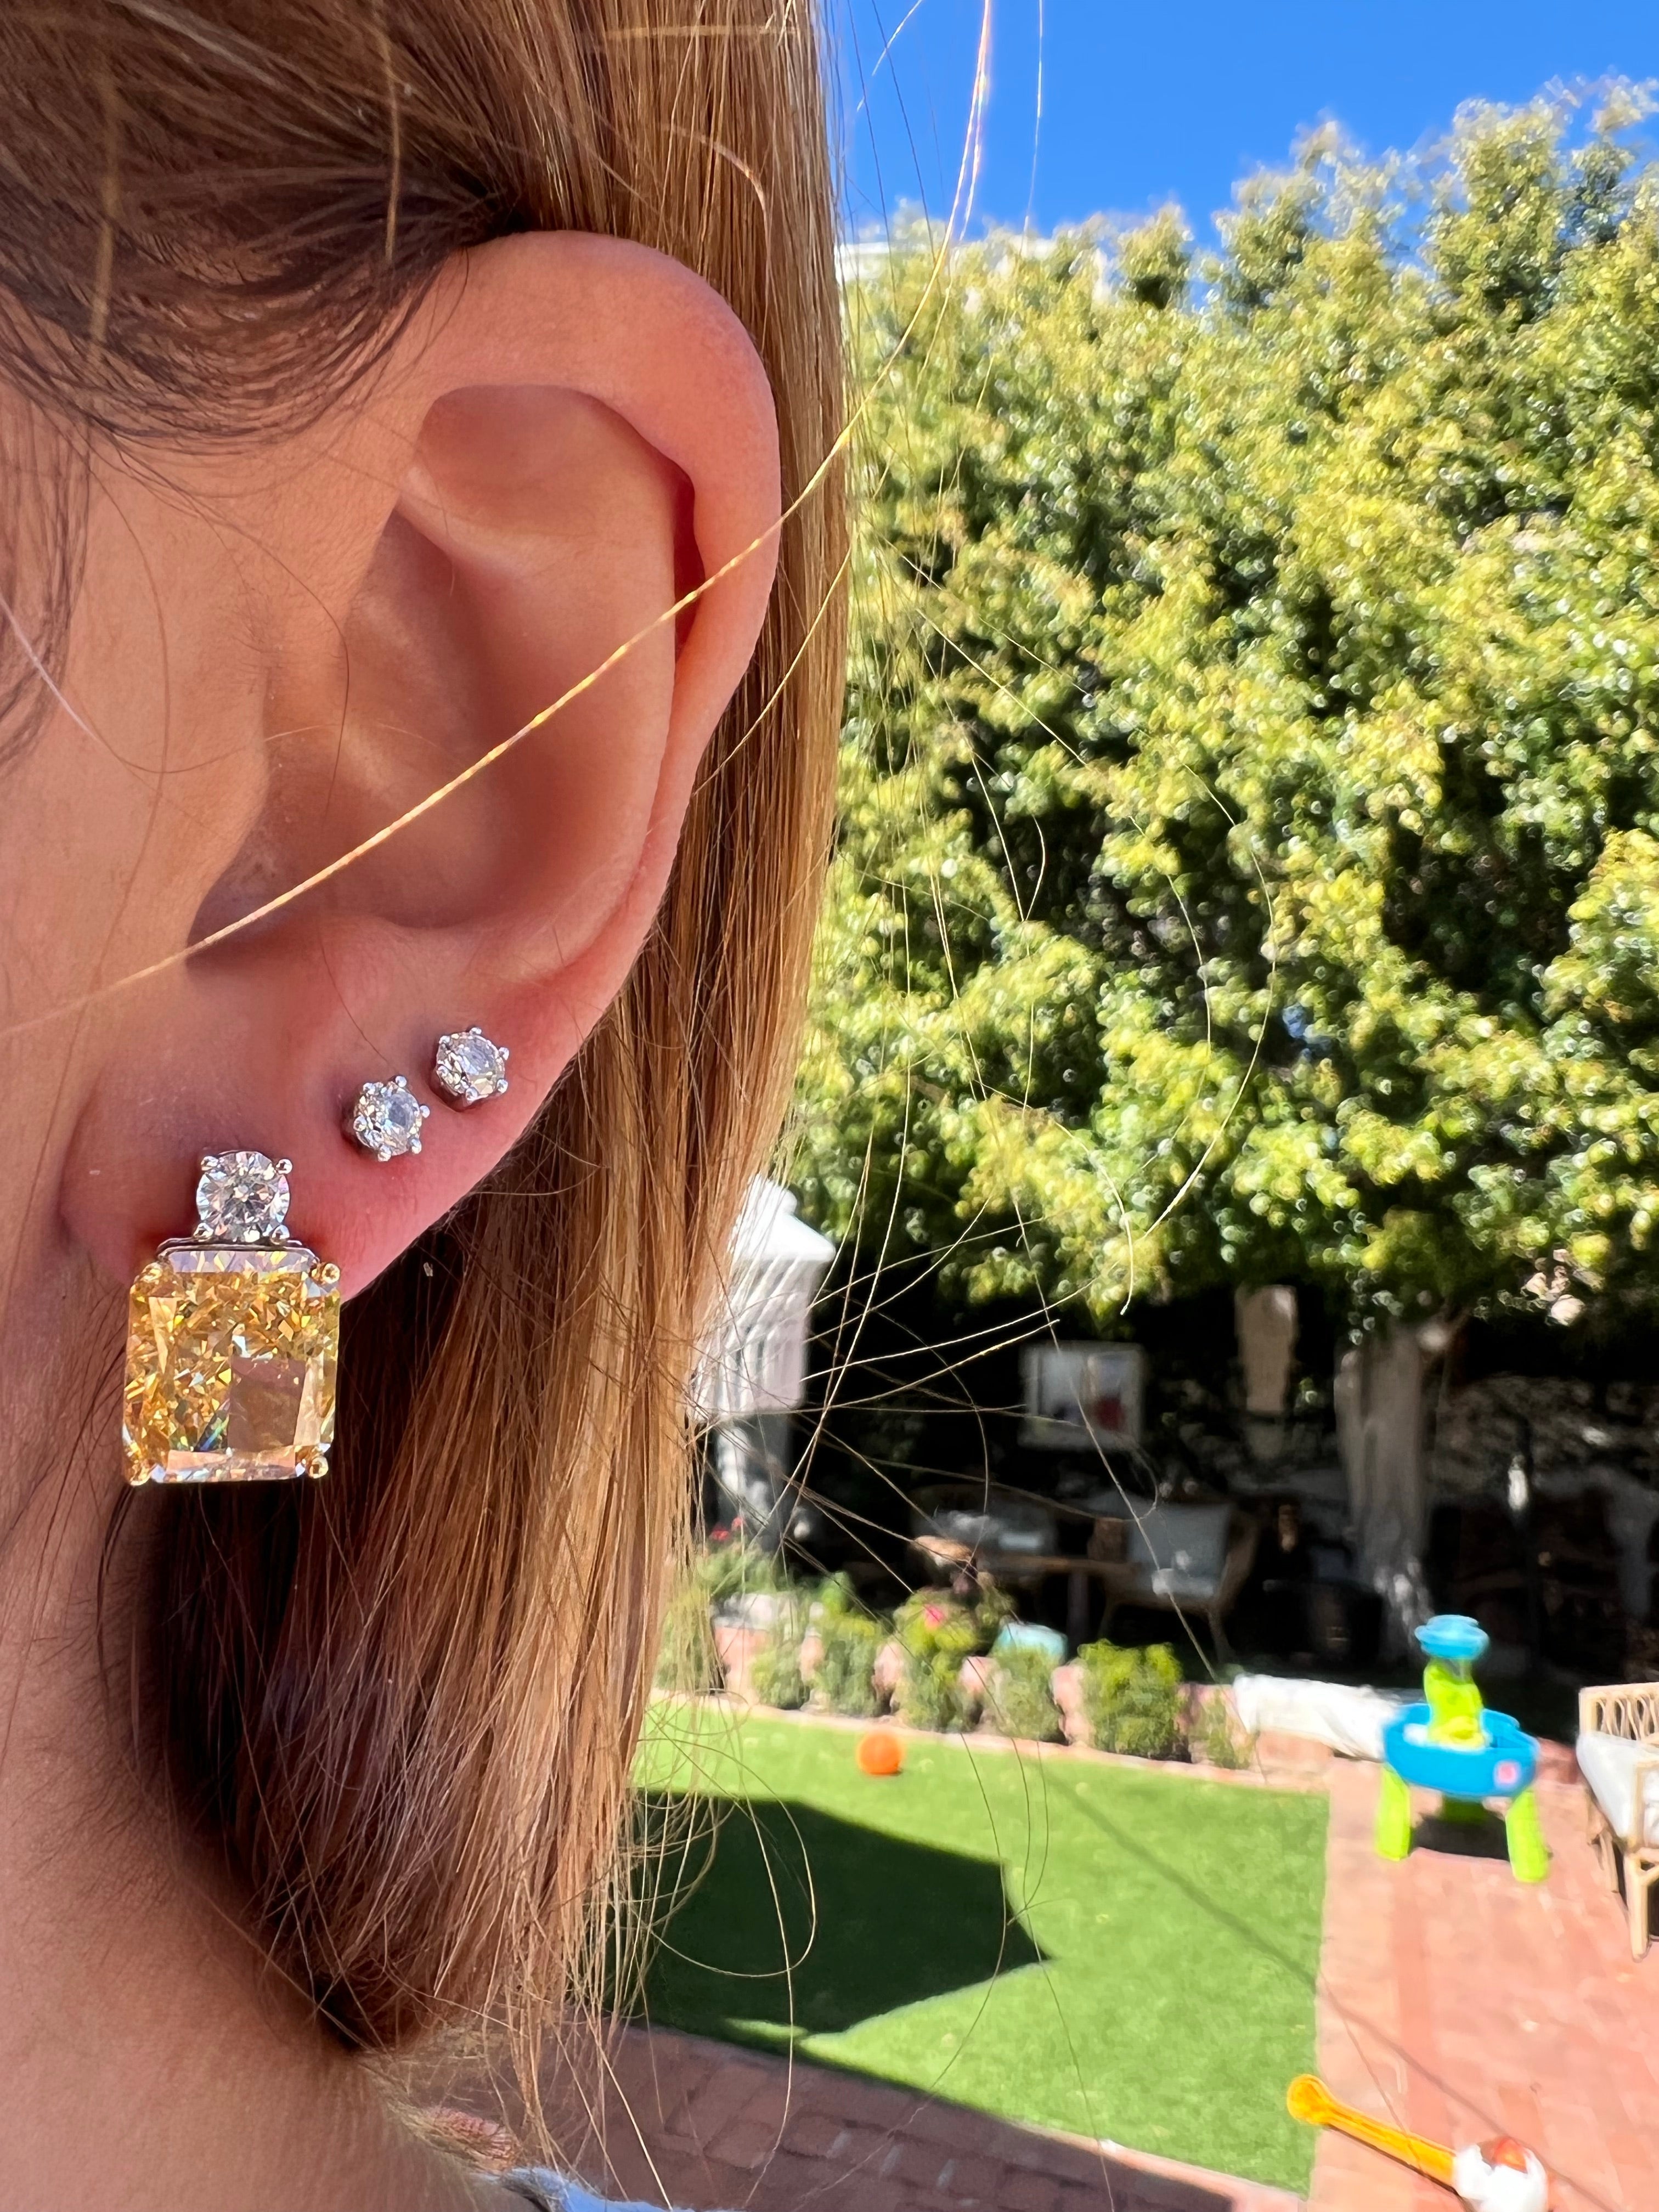 Diamond Studs, Diamond Stud Earrings at